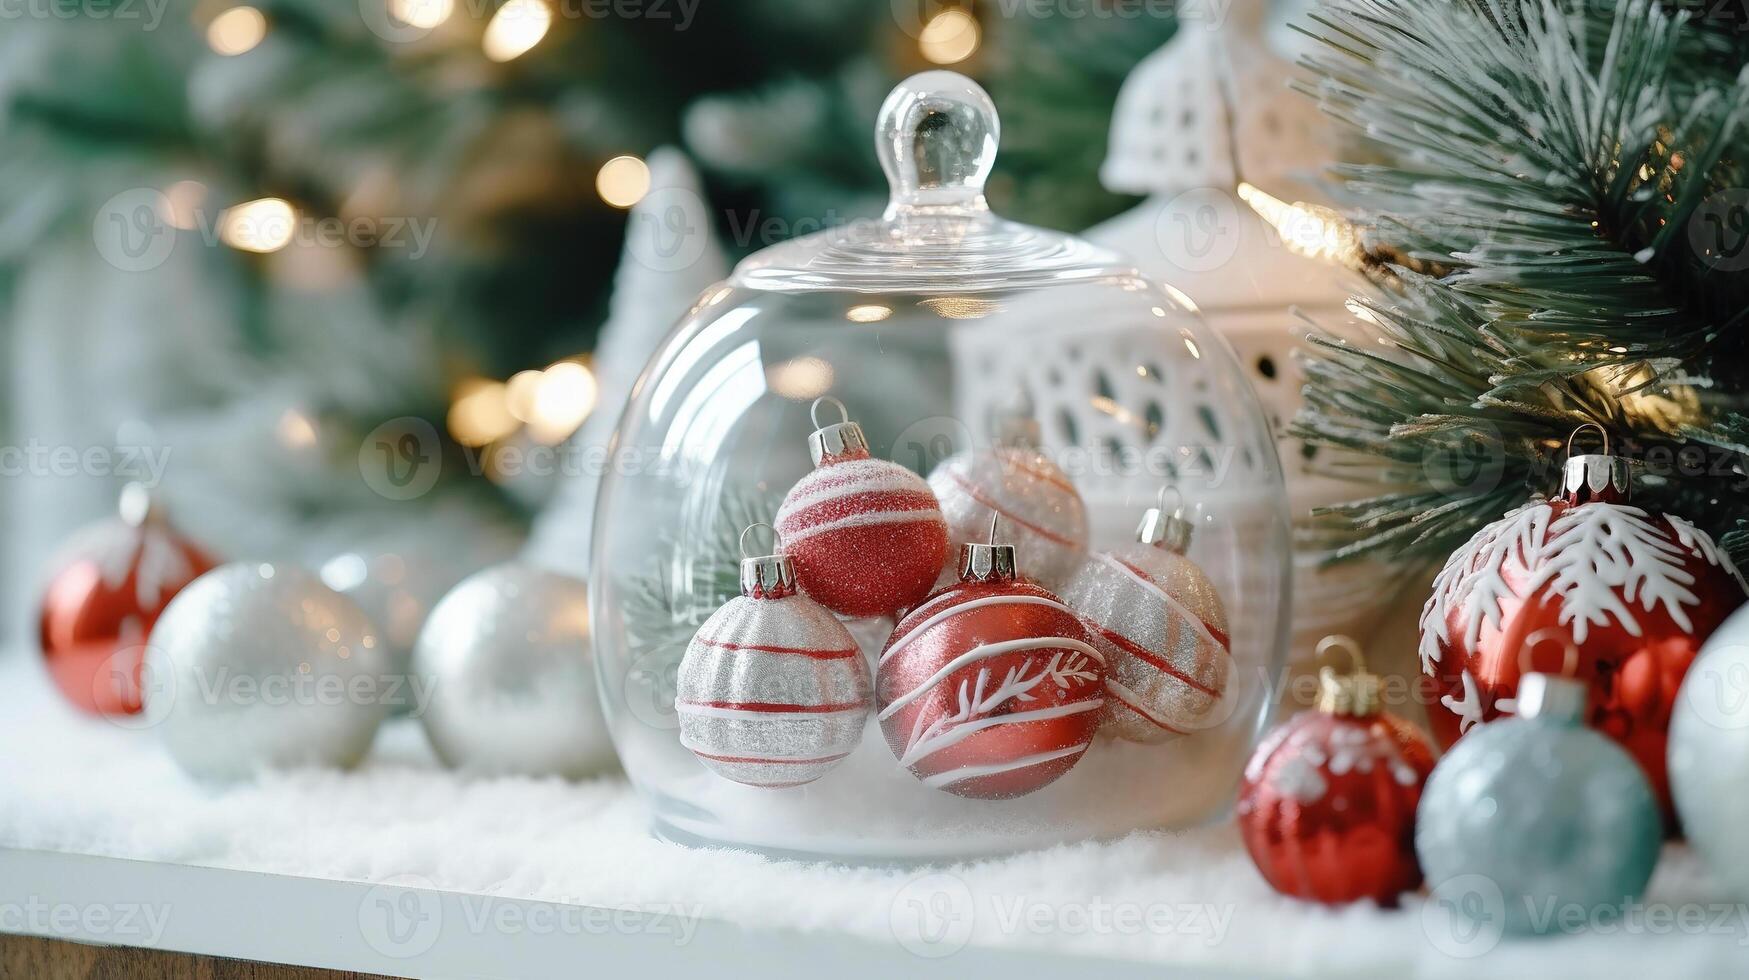 jul dekorationer närbild mot de bakgrund av en jul träd foto